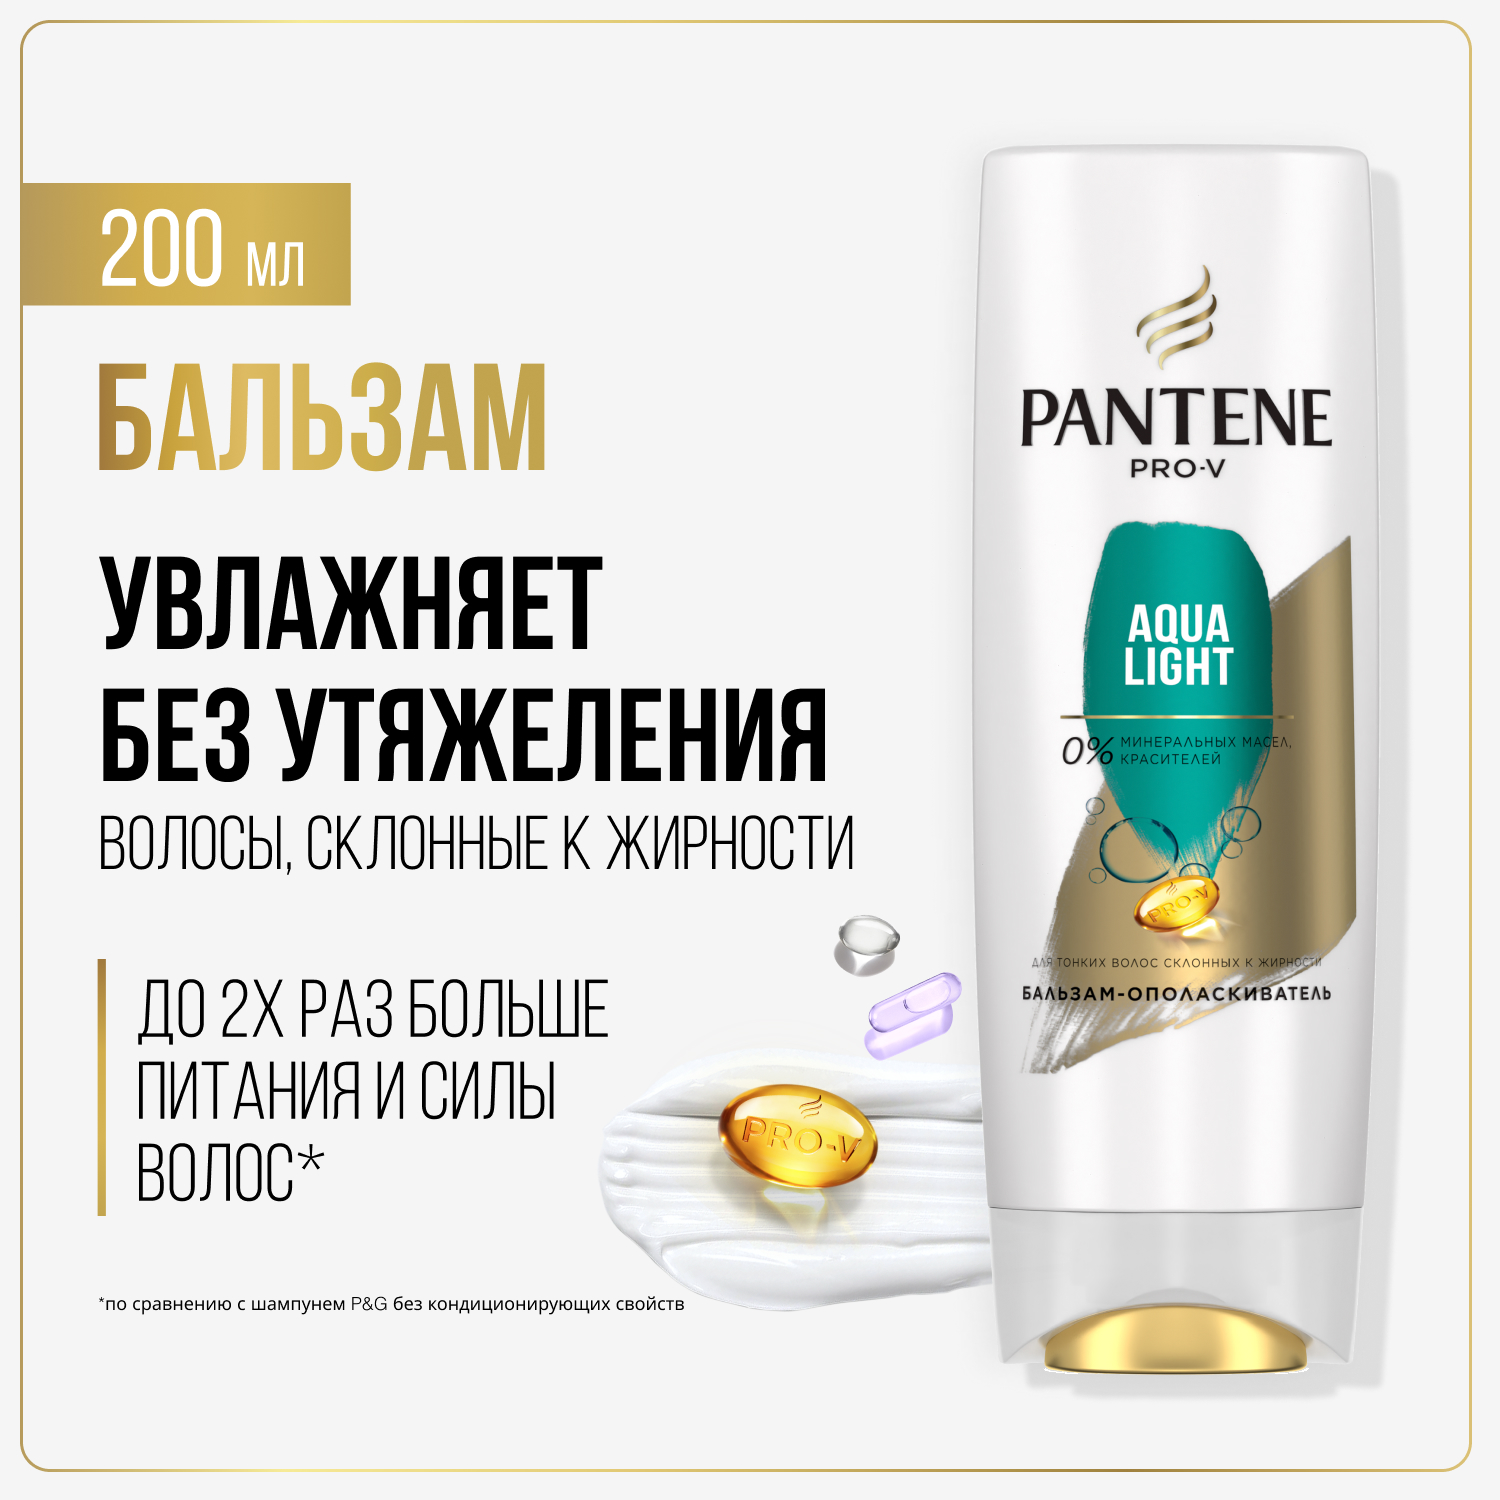 Бальзам для волос Pantene Aqua Light легкий, питательный и укрепляющий 200 мл avene бальзам питательный легкий трикзера nutrition 400 мл